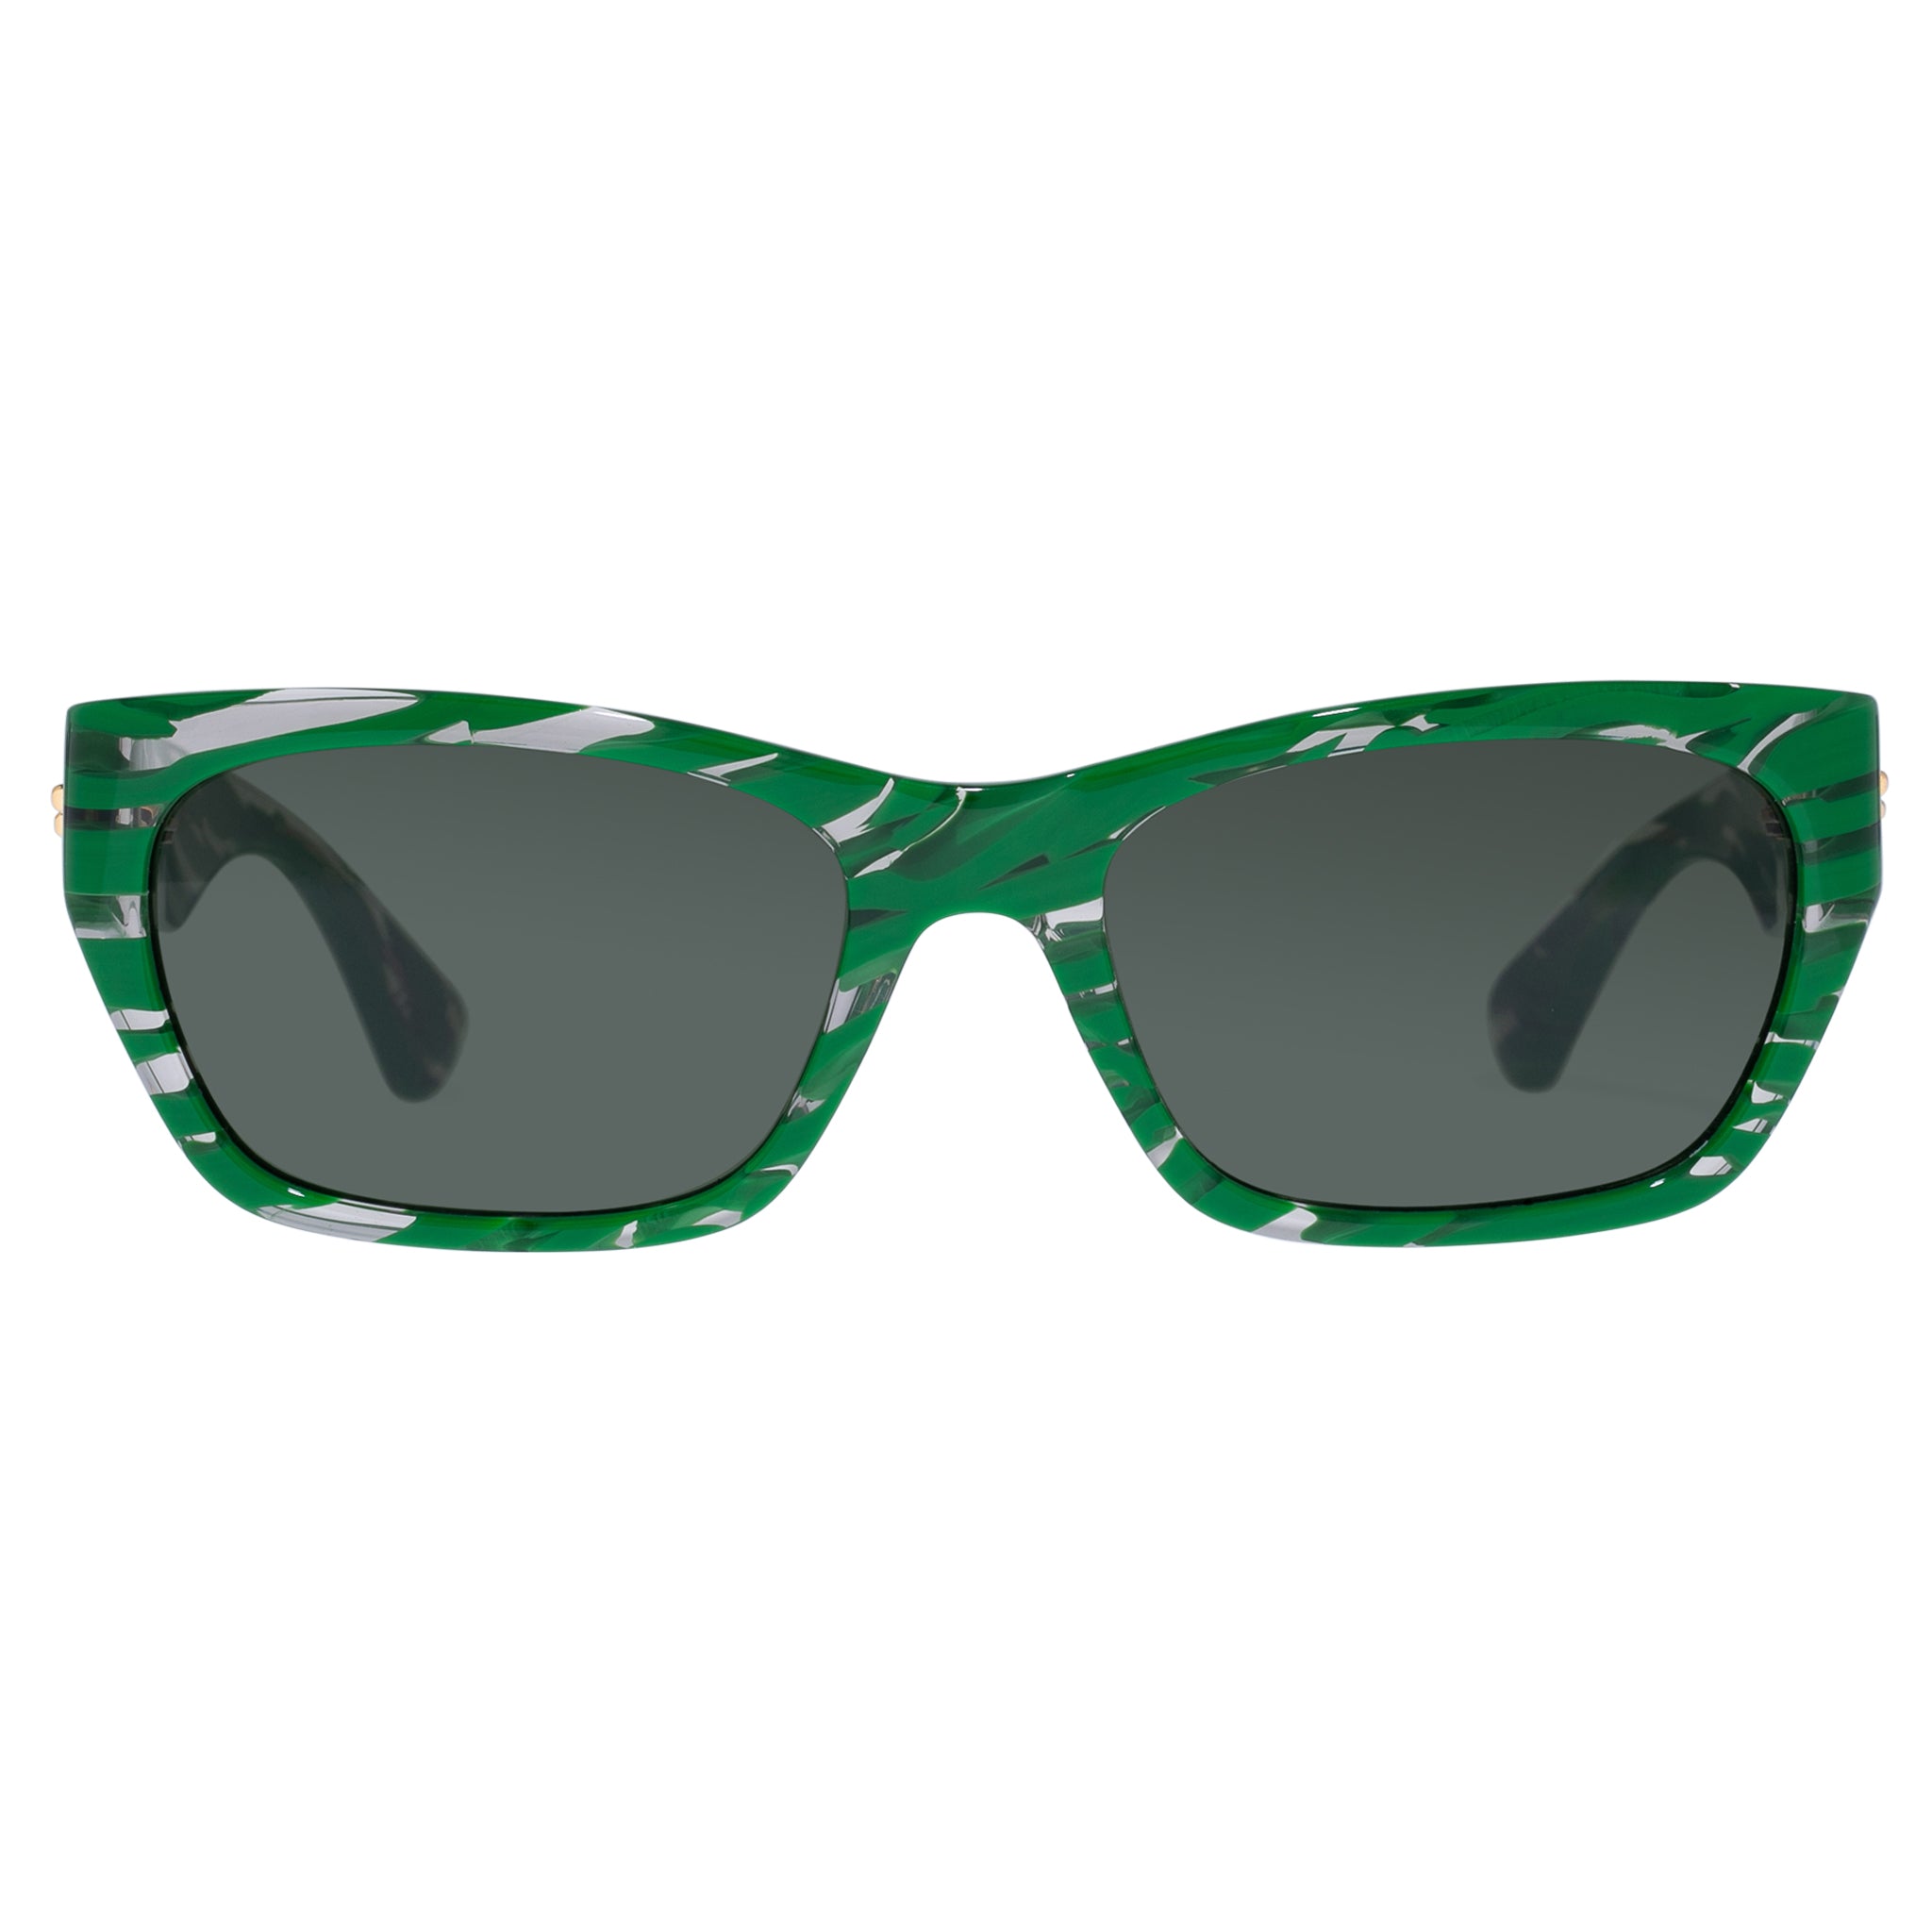 Bottega Veneta, Accessories, New Bottega Veneta Bv03s 004 Ivory Authentic  Sunglasses 5517 145 Wcase